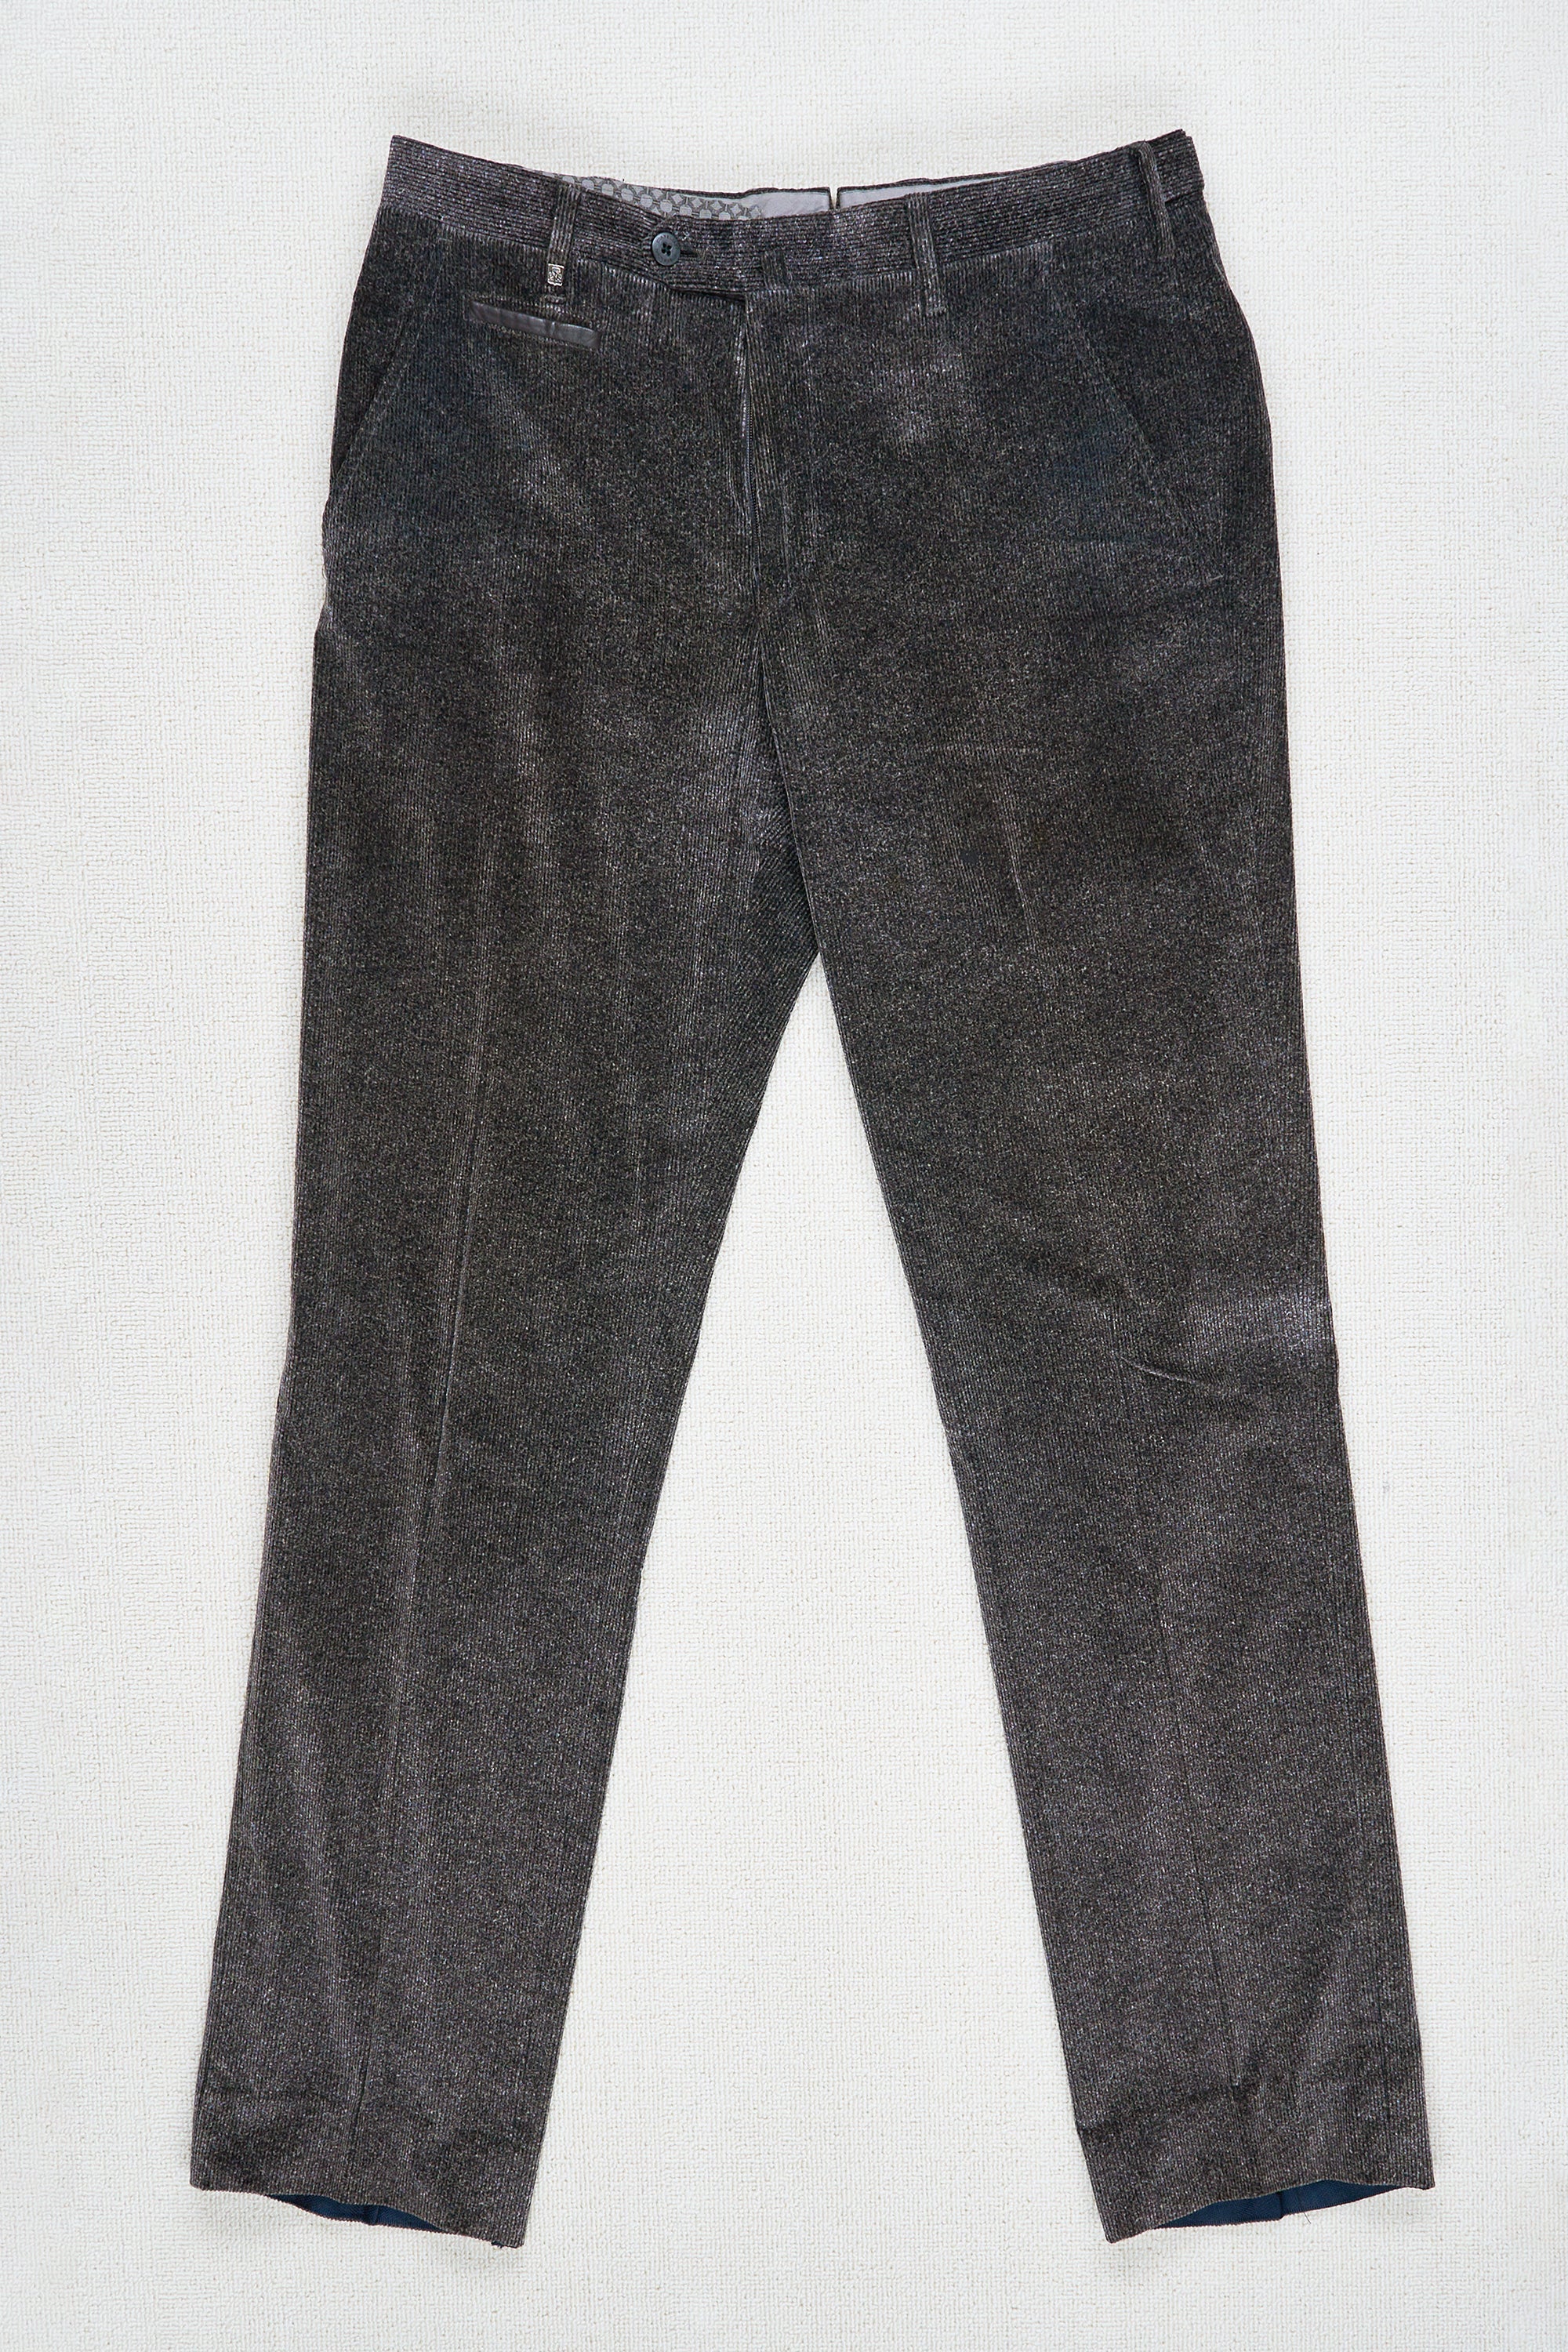 Corneliani Grey Corduroy Trousers